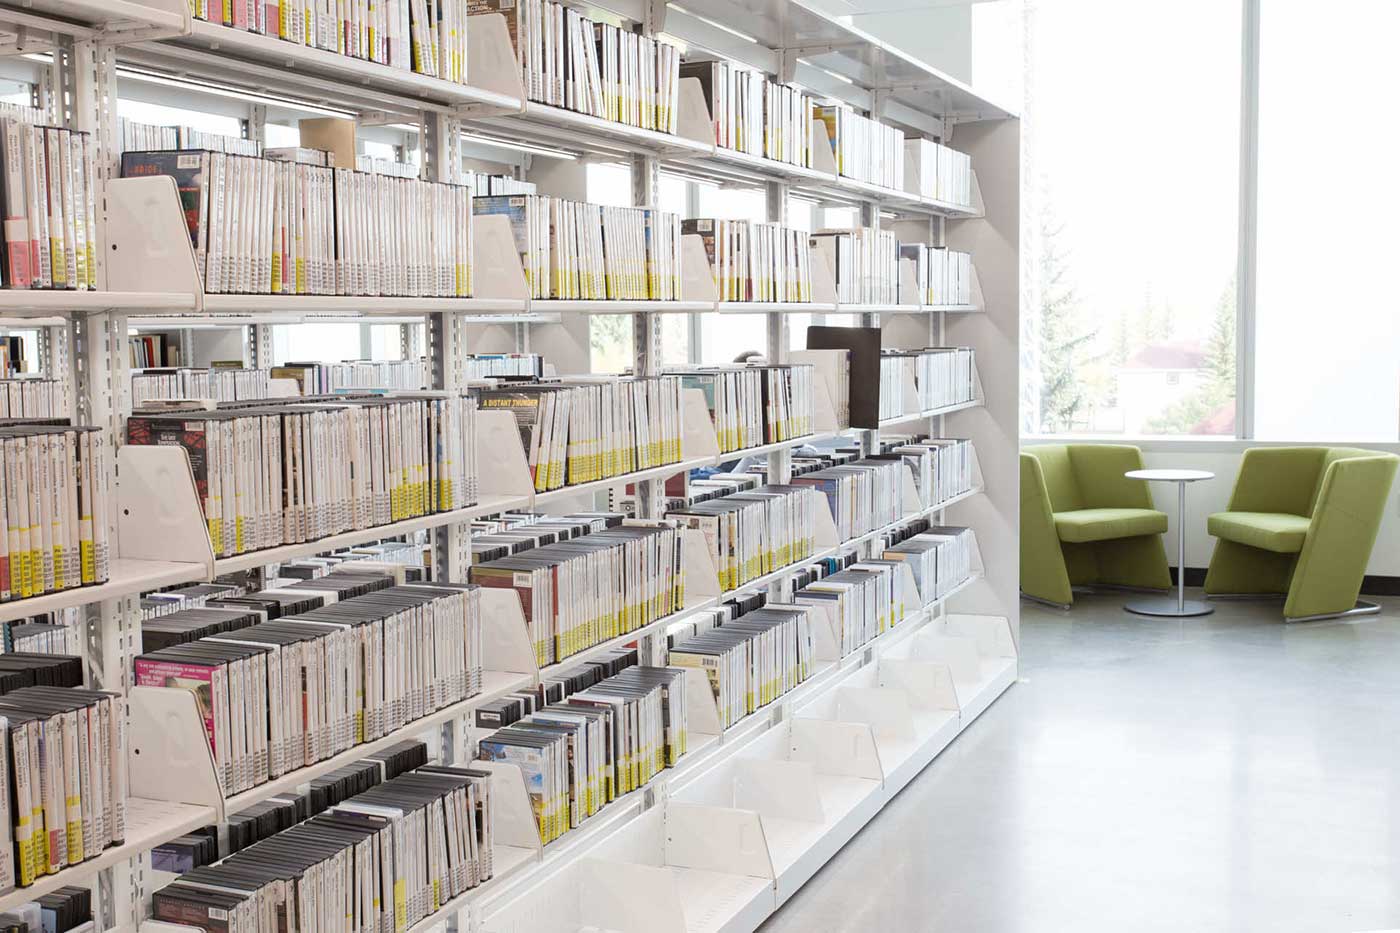 custom library shelving for university student needs